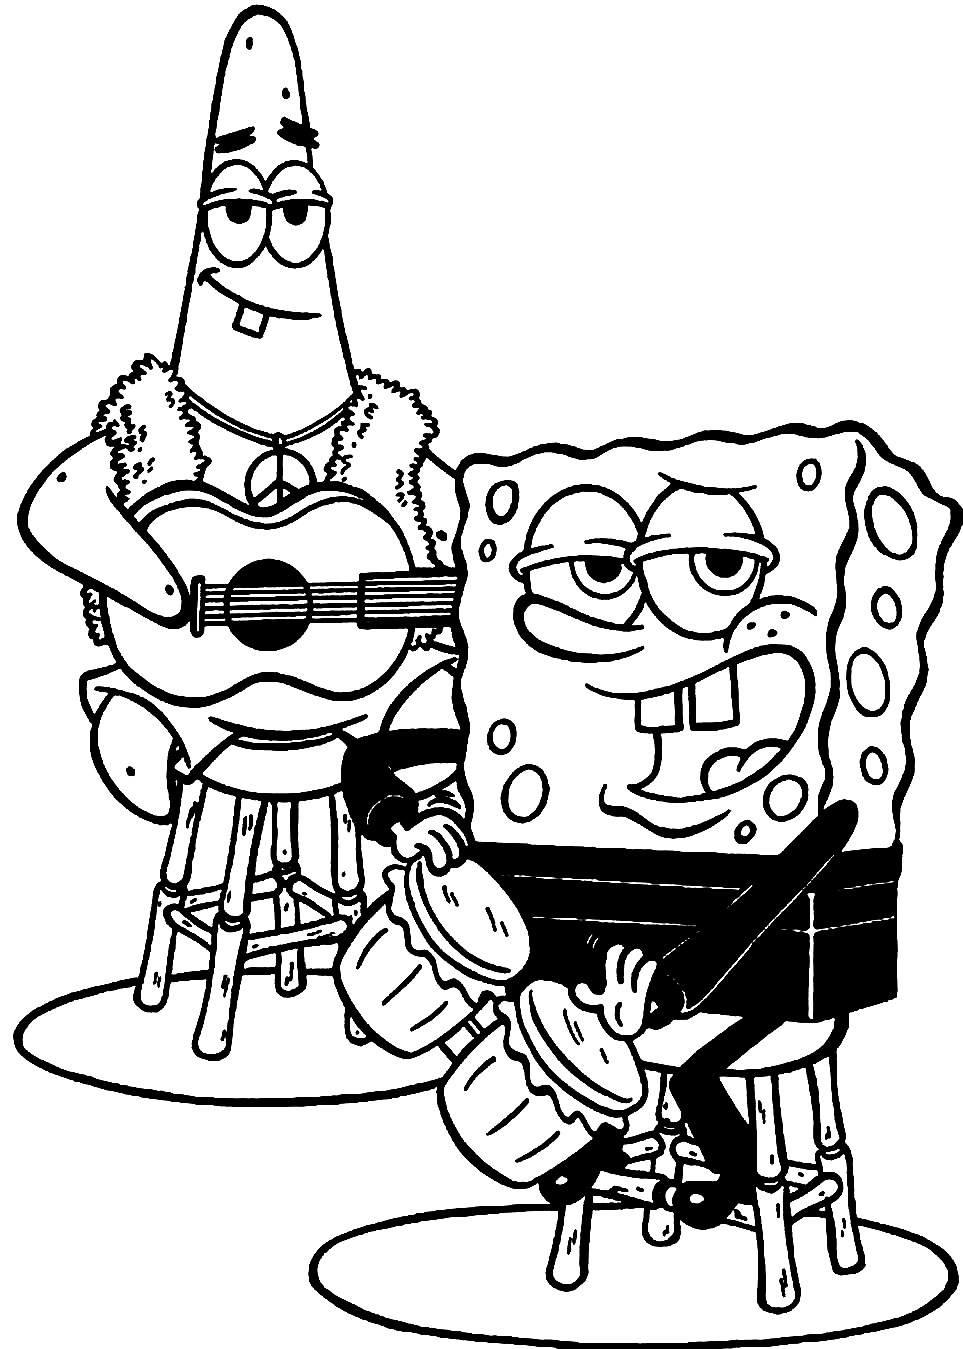 Patrick e Spongebob 1 da Spongebob